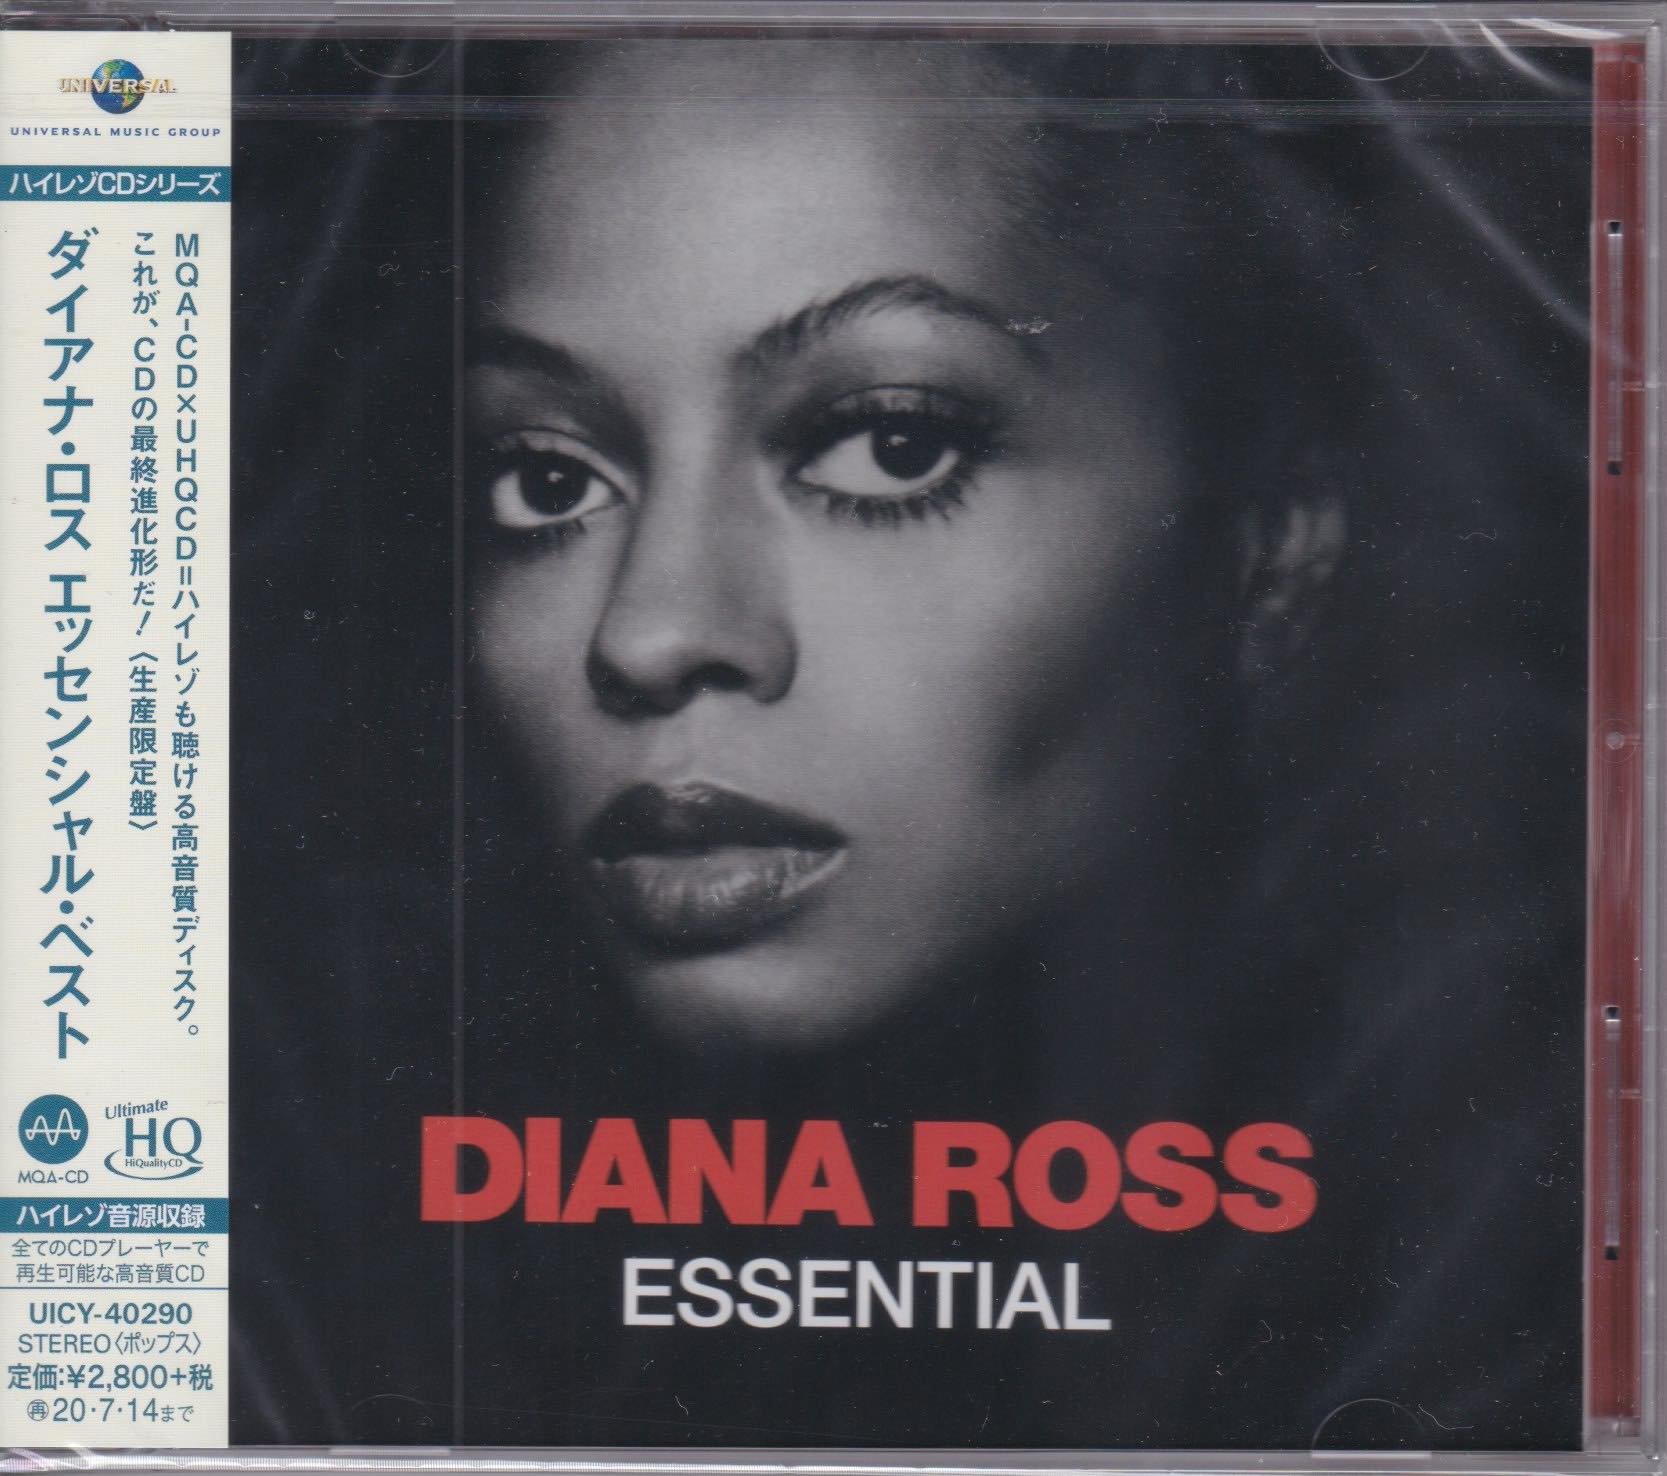 Diana Ross ‎– Essential